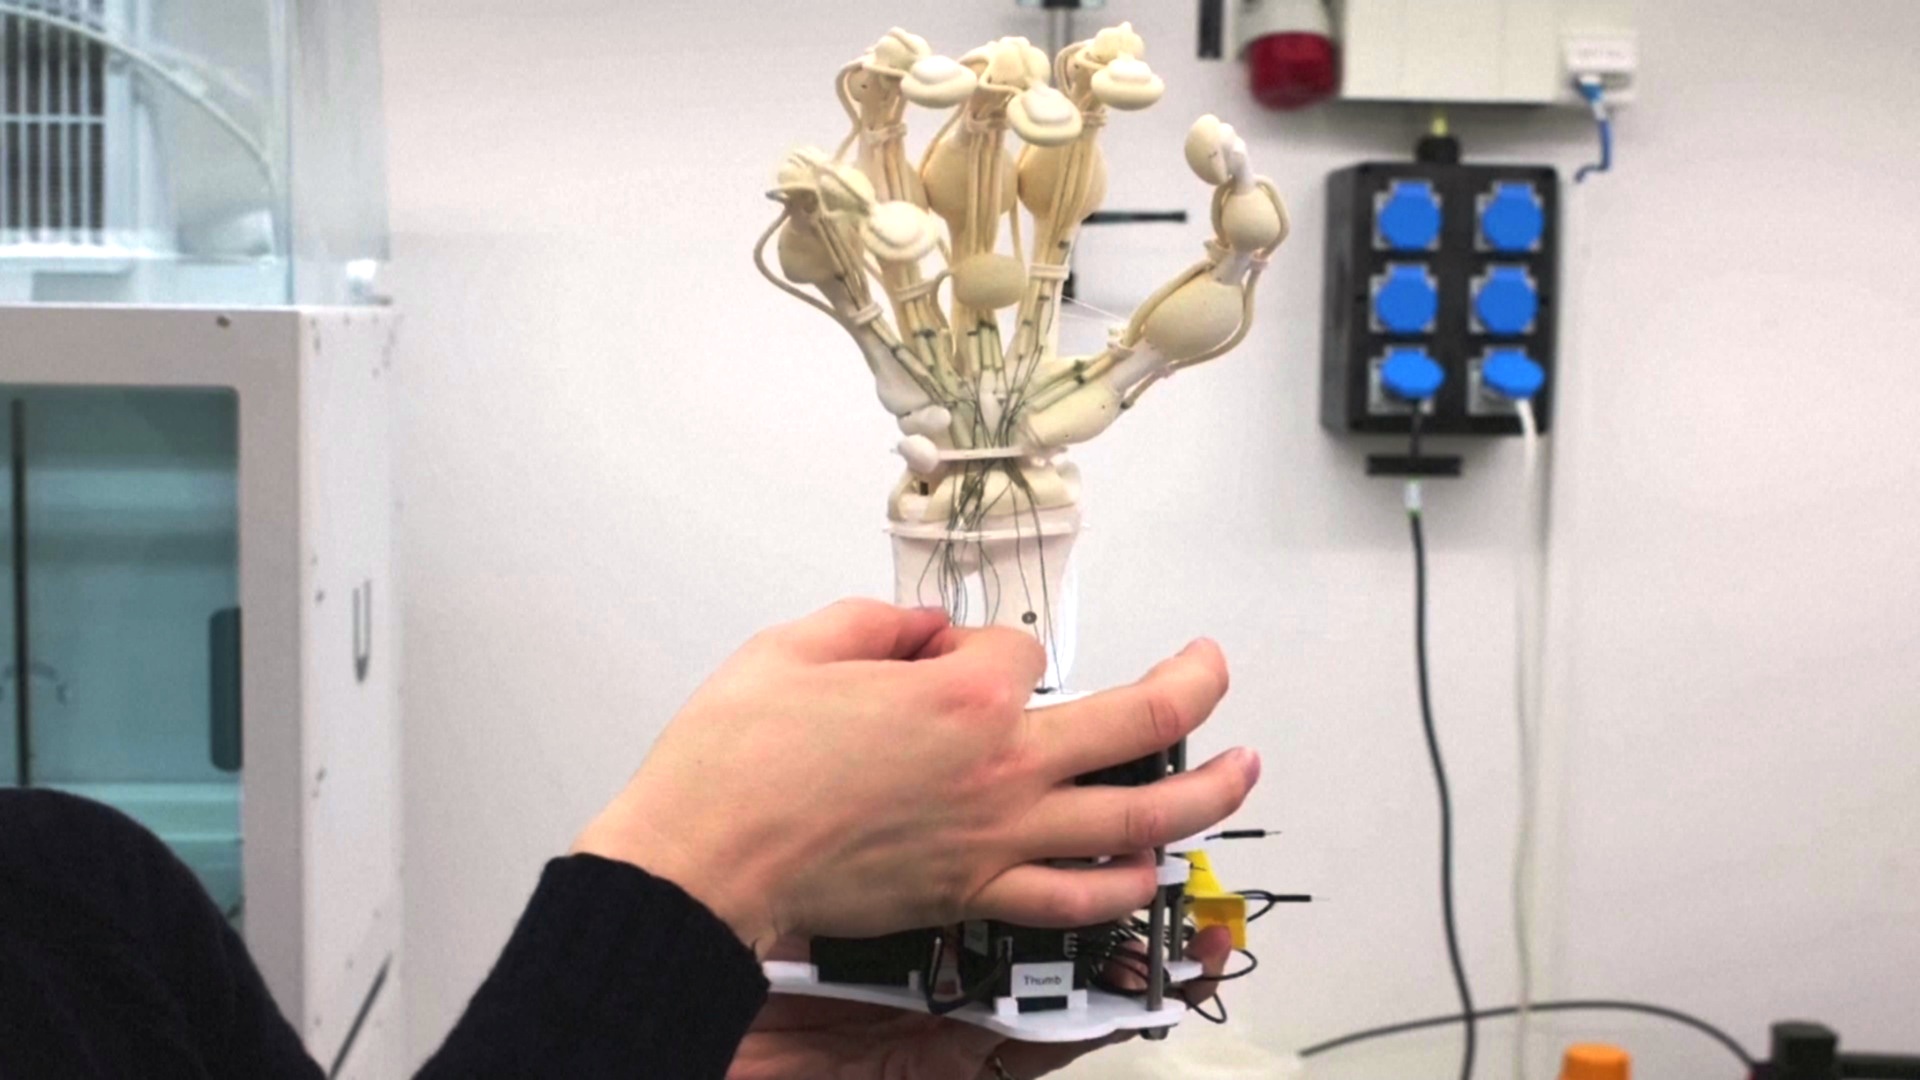 Роботизированную руку, похожую на человеческую, напечатали на новом 3D-принтере в Швейцарии